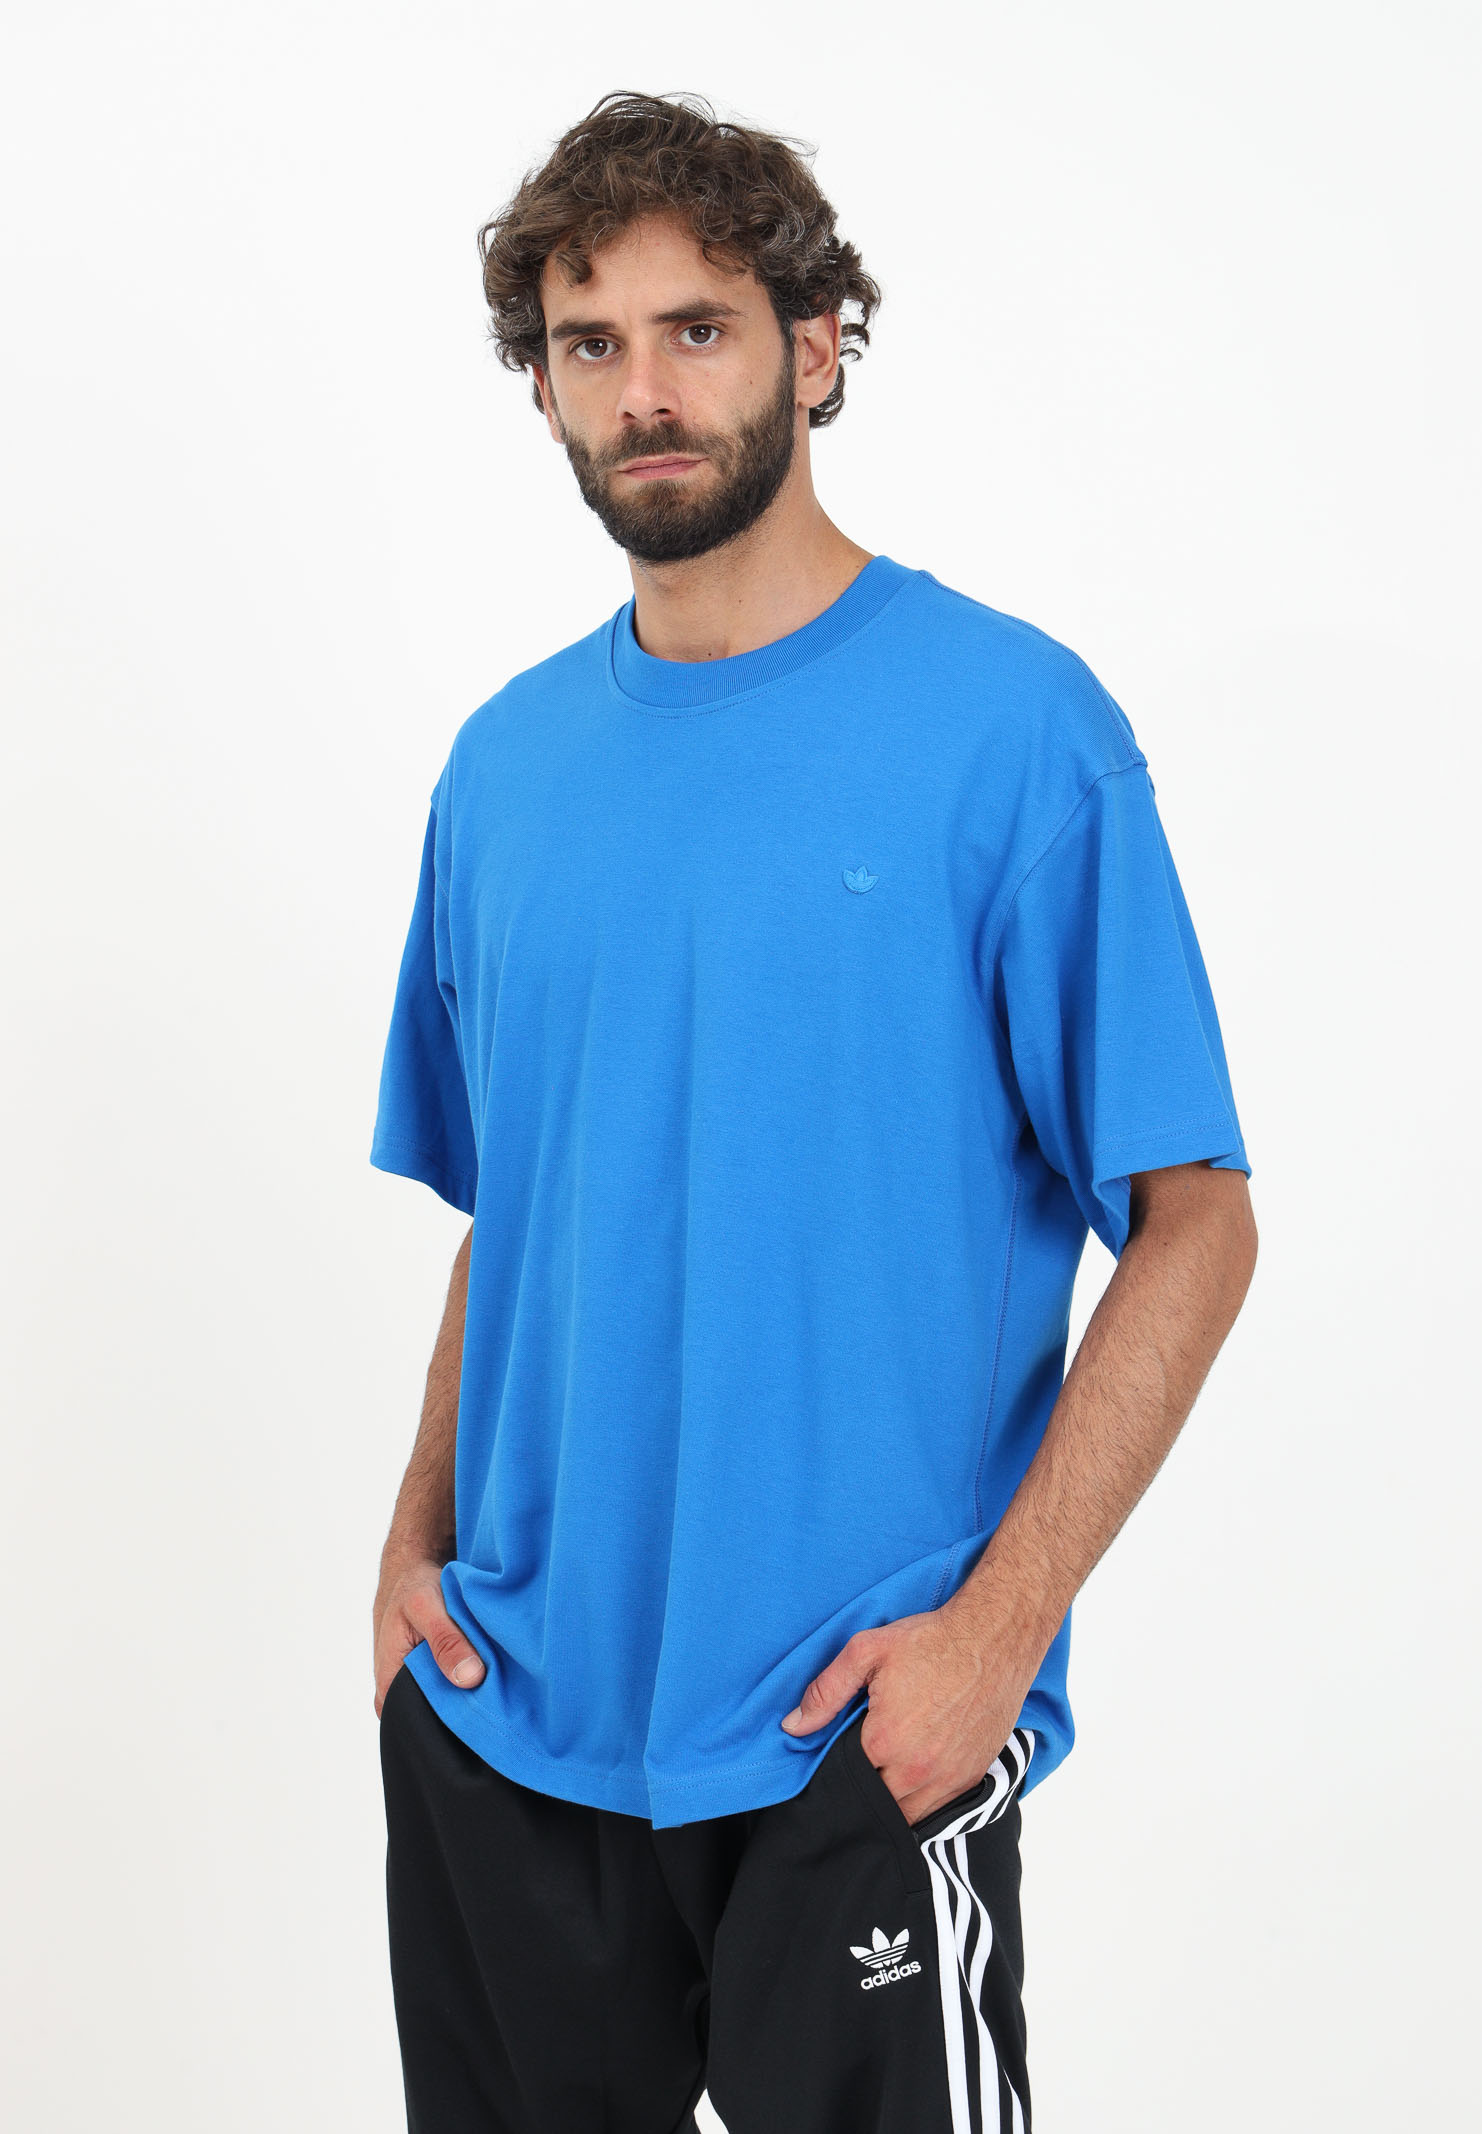 Adicolor Contempo light blue ADIDAS - t-shirt Pavidas - men\'s ORIGINALS